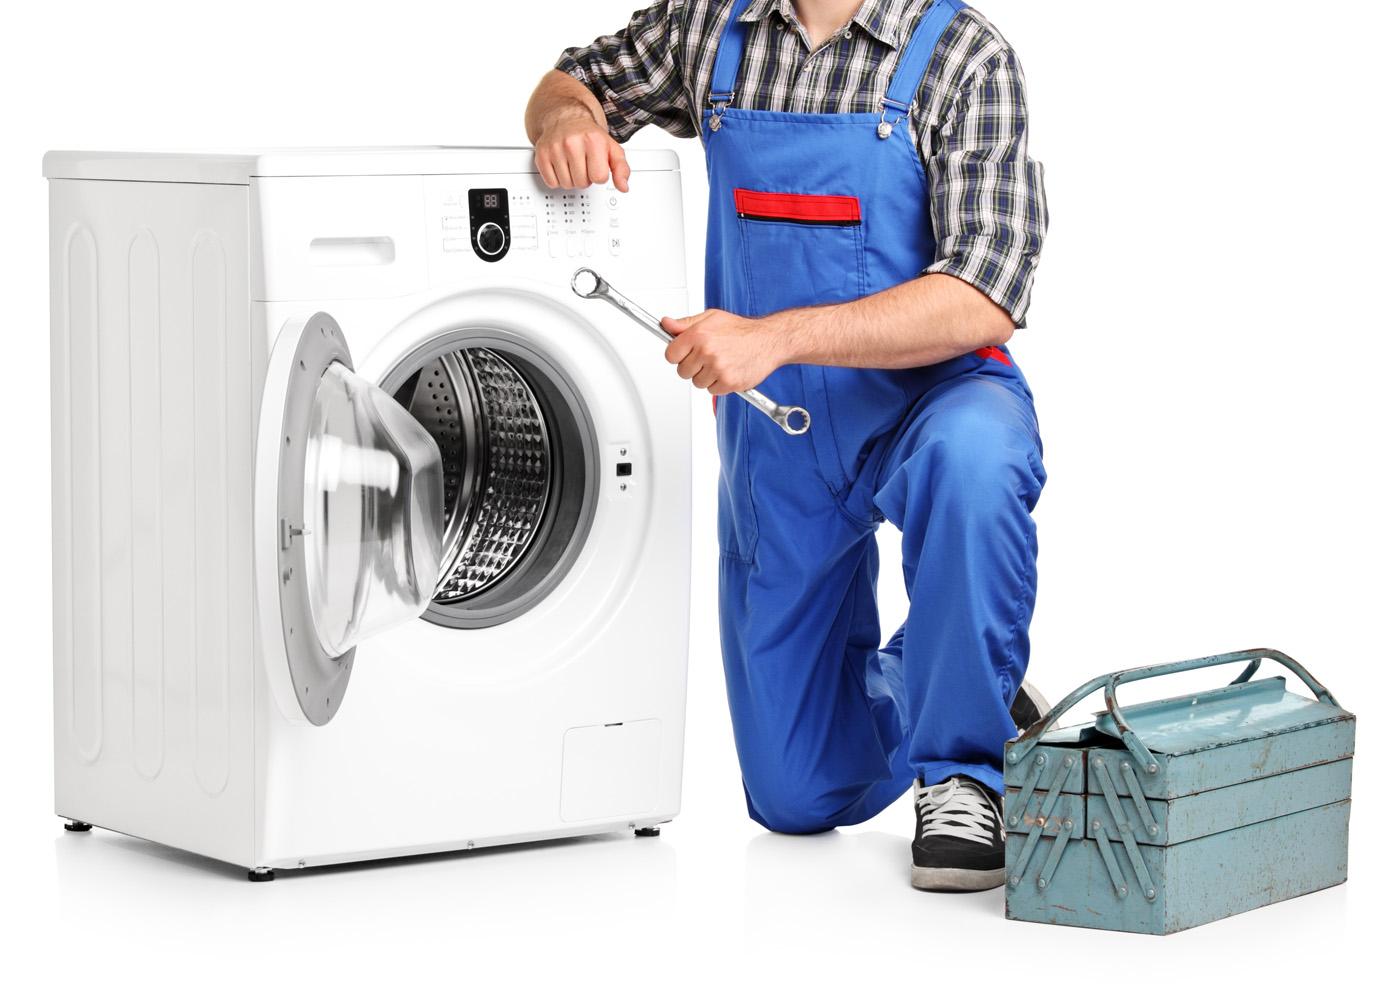 Ремонт com стиральных машин